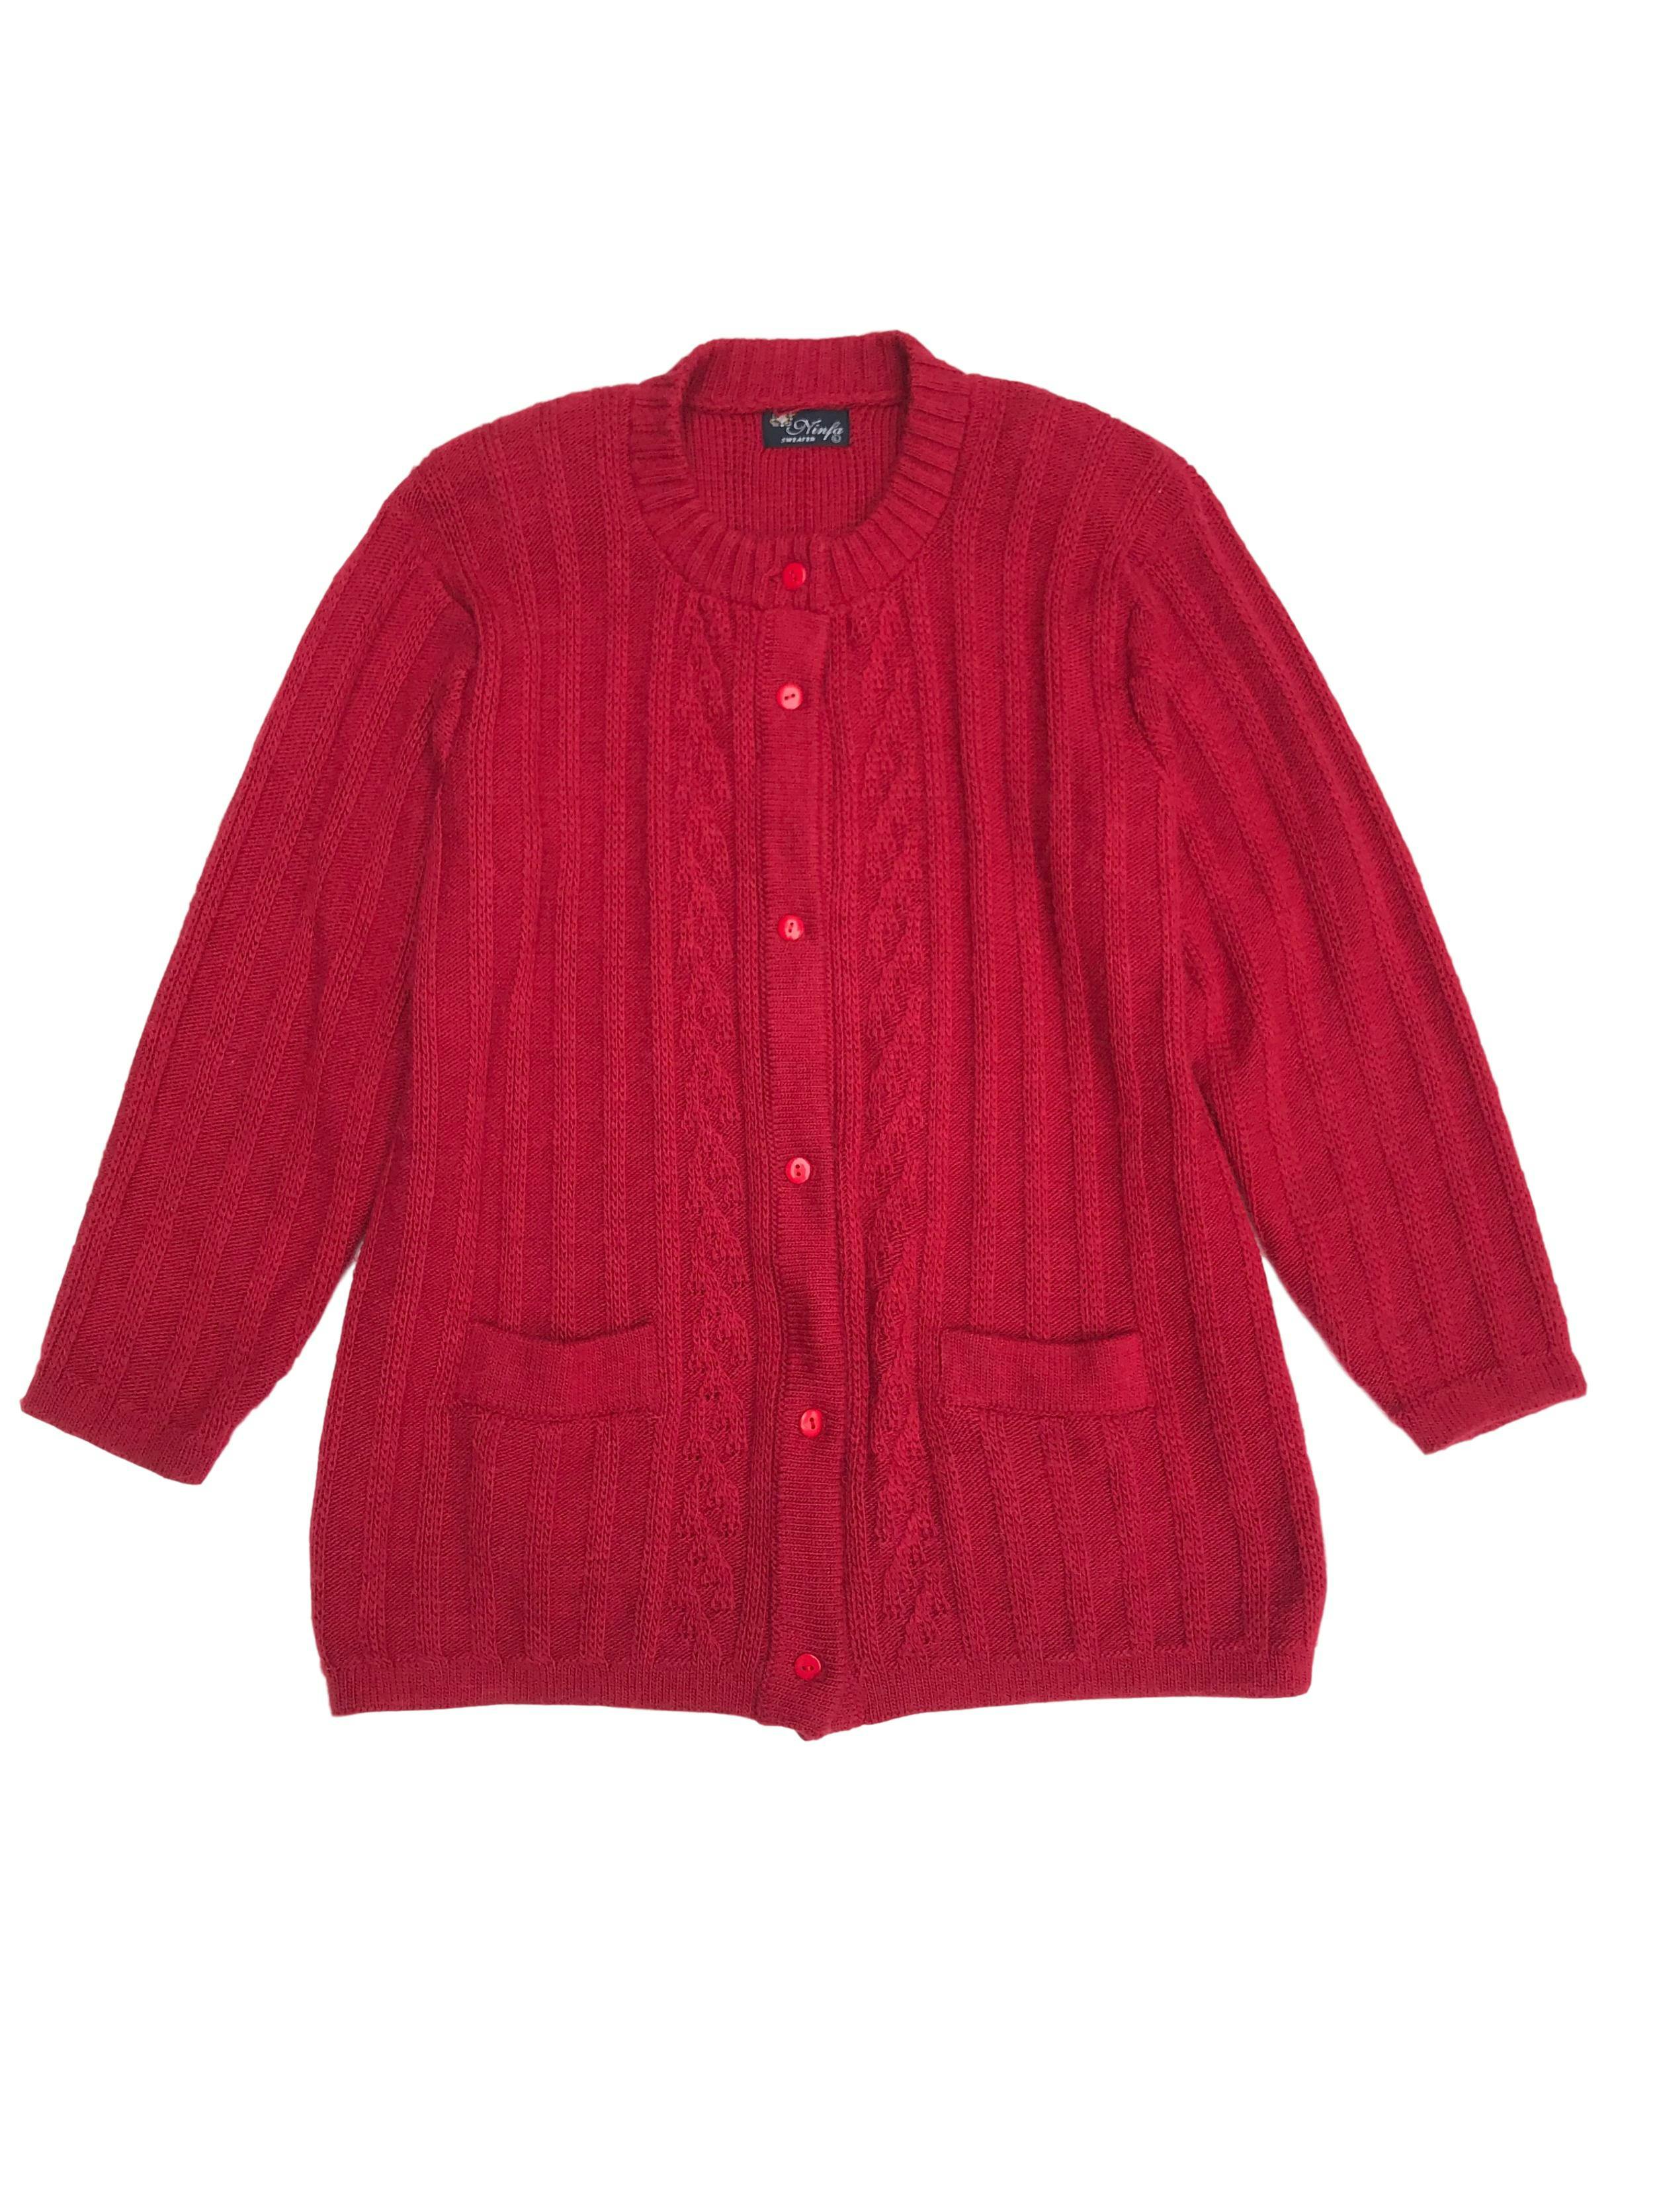 Cardigan vintage rojo fresa con texturas, botones y bolsillos delanteros. Largo 68cm